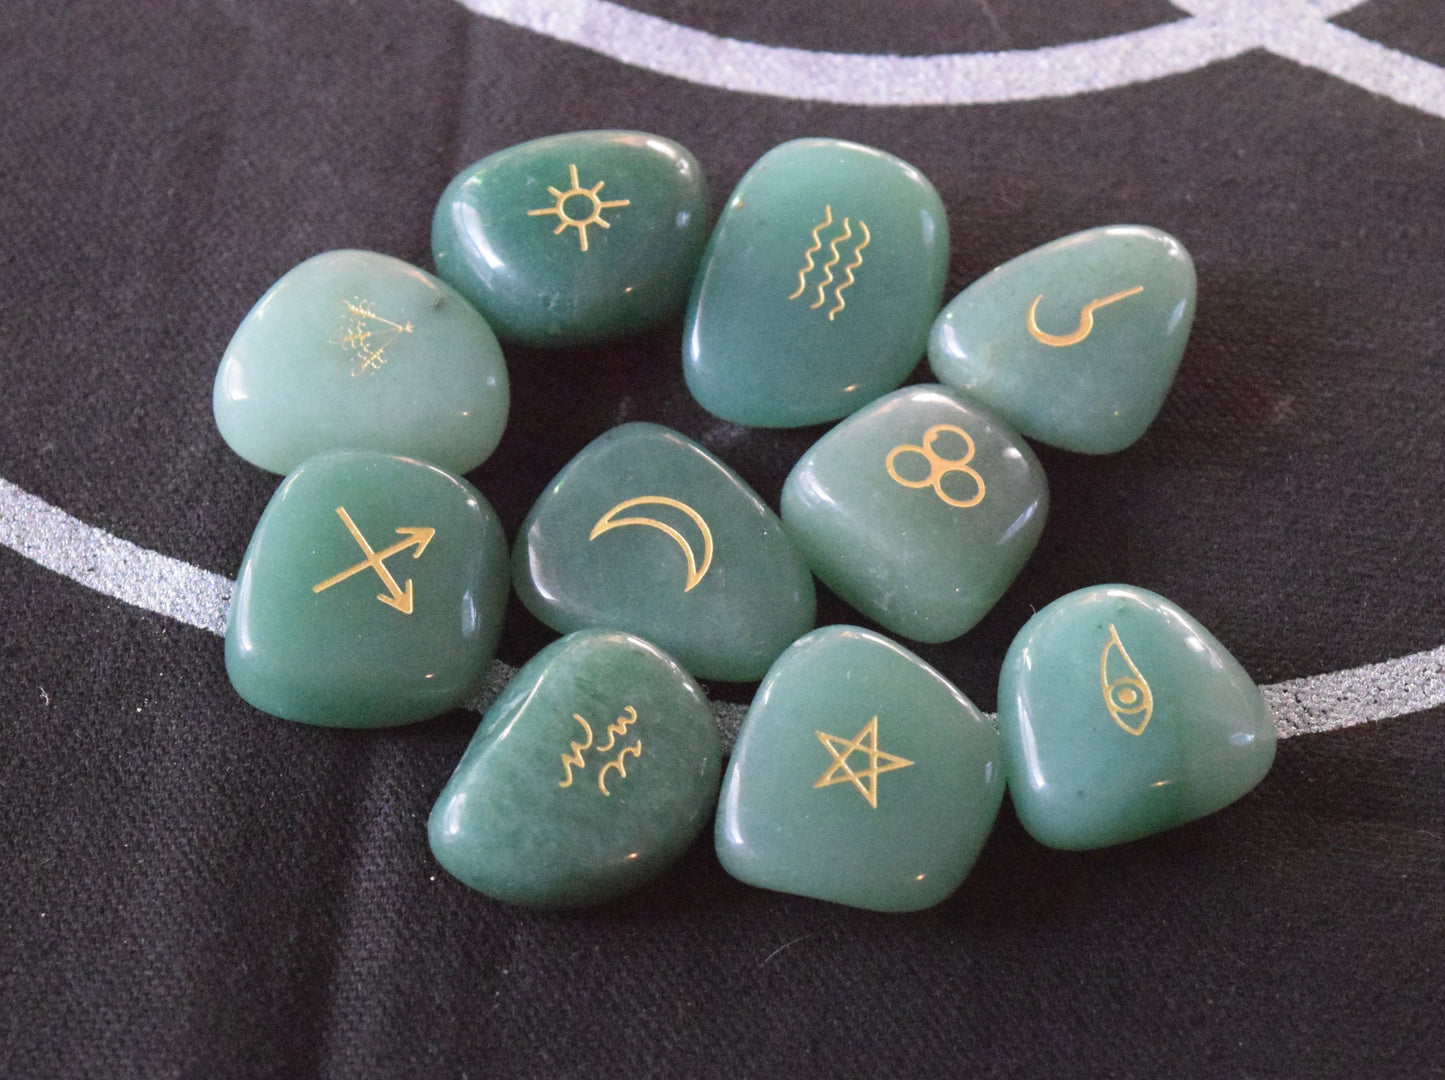 Witches' Runes - 10 Piece Set